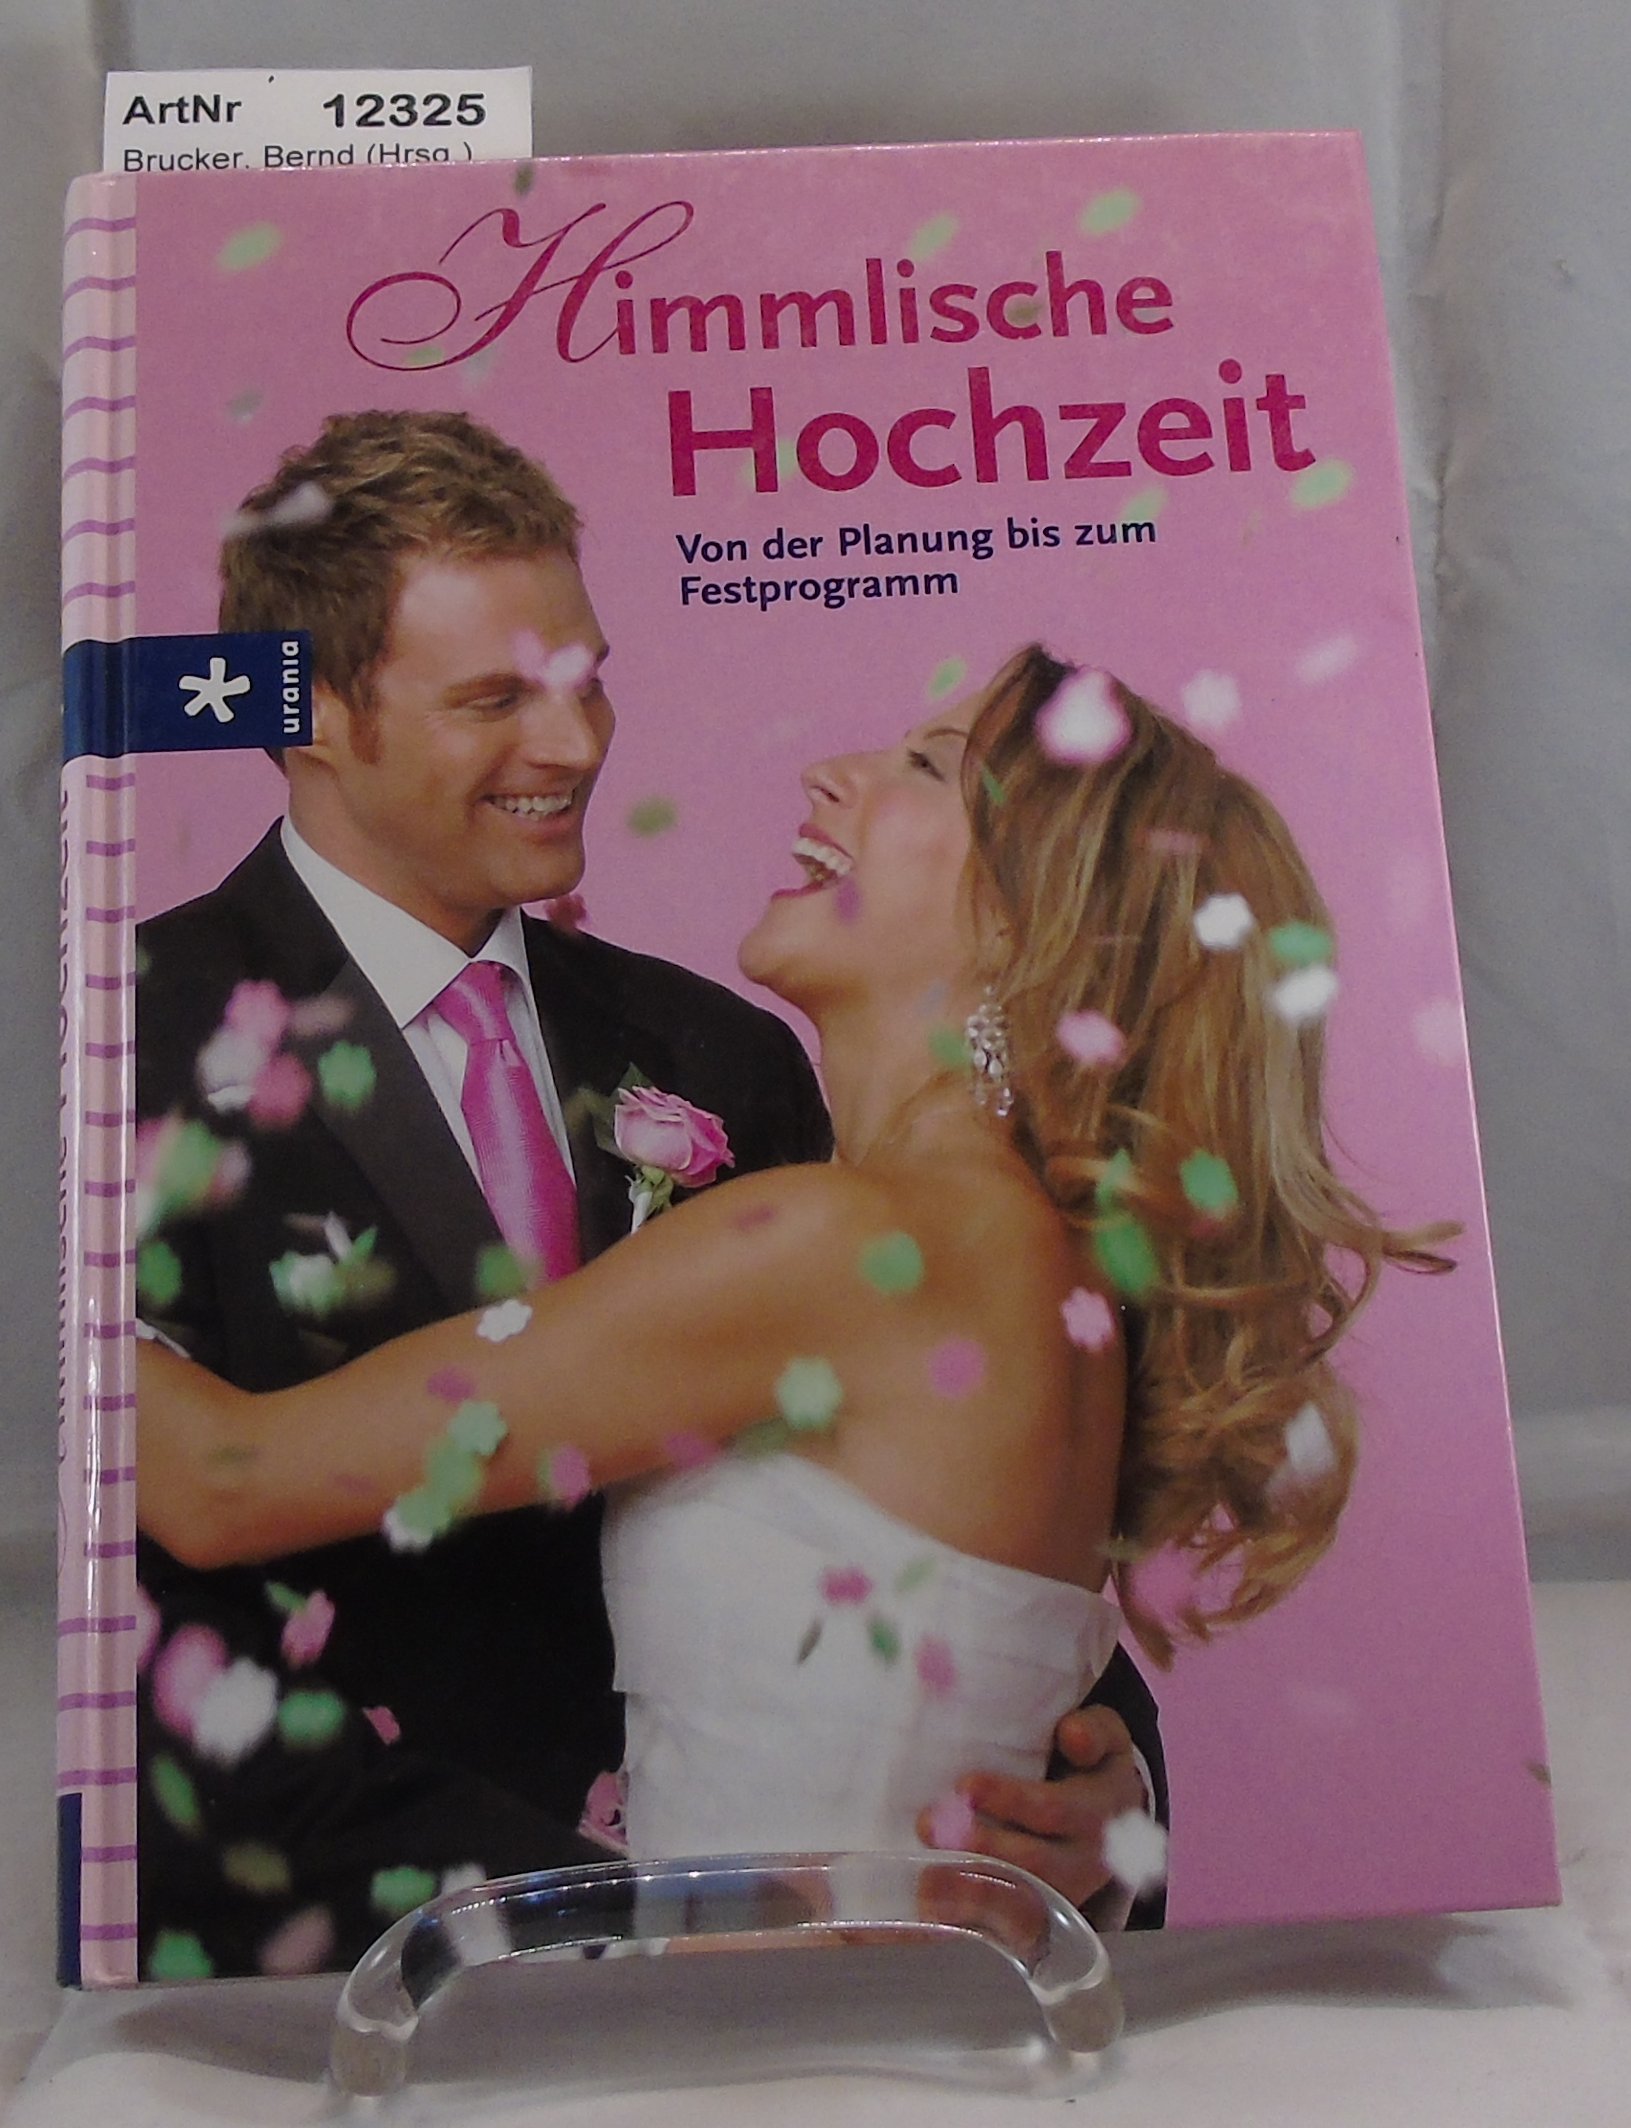 Brucker, Bernd (Hrsg.)   Himmlische Hochzeit. Von der Planung bis zu m Festprogramm. 